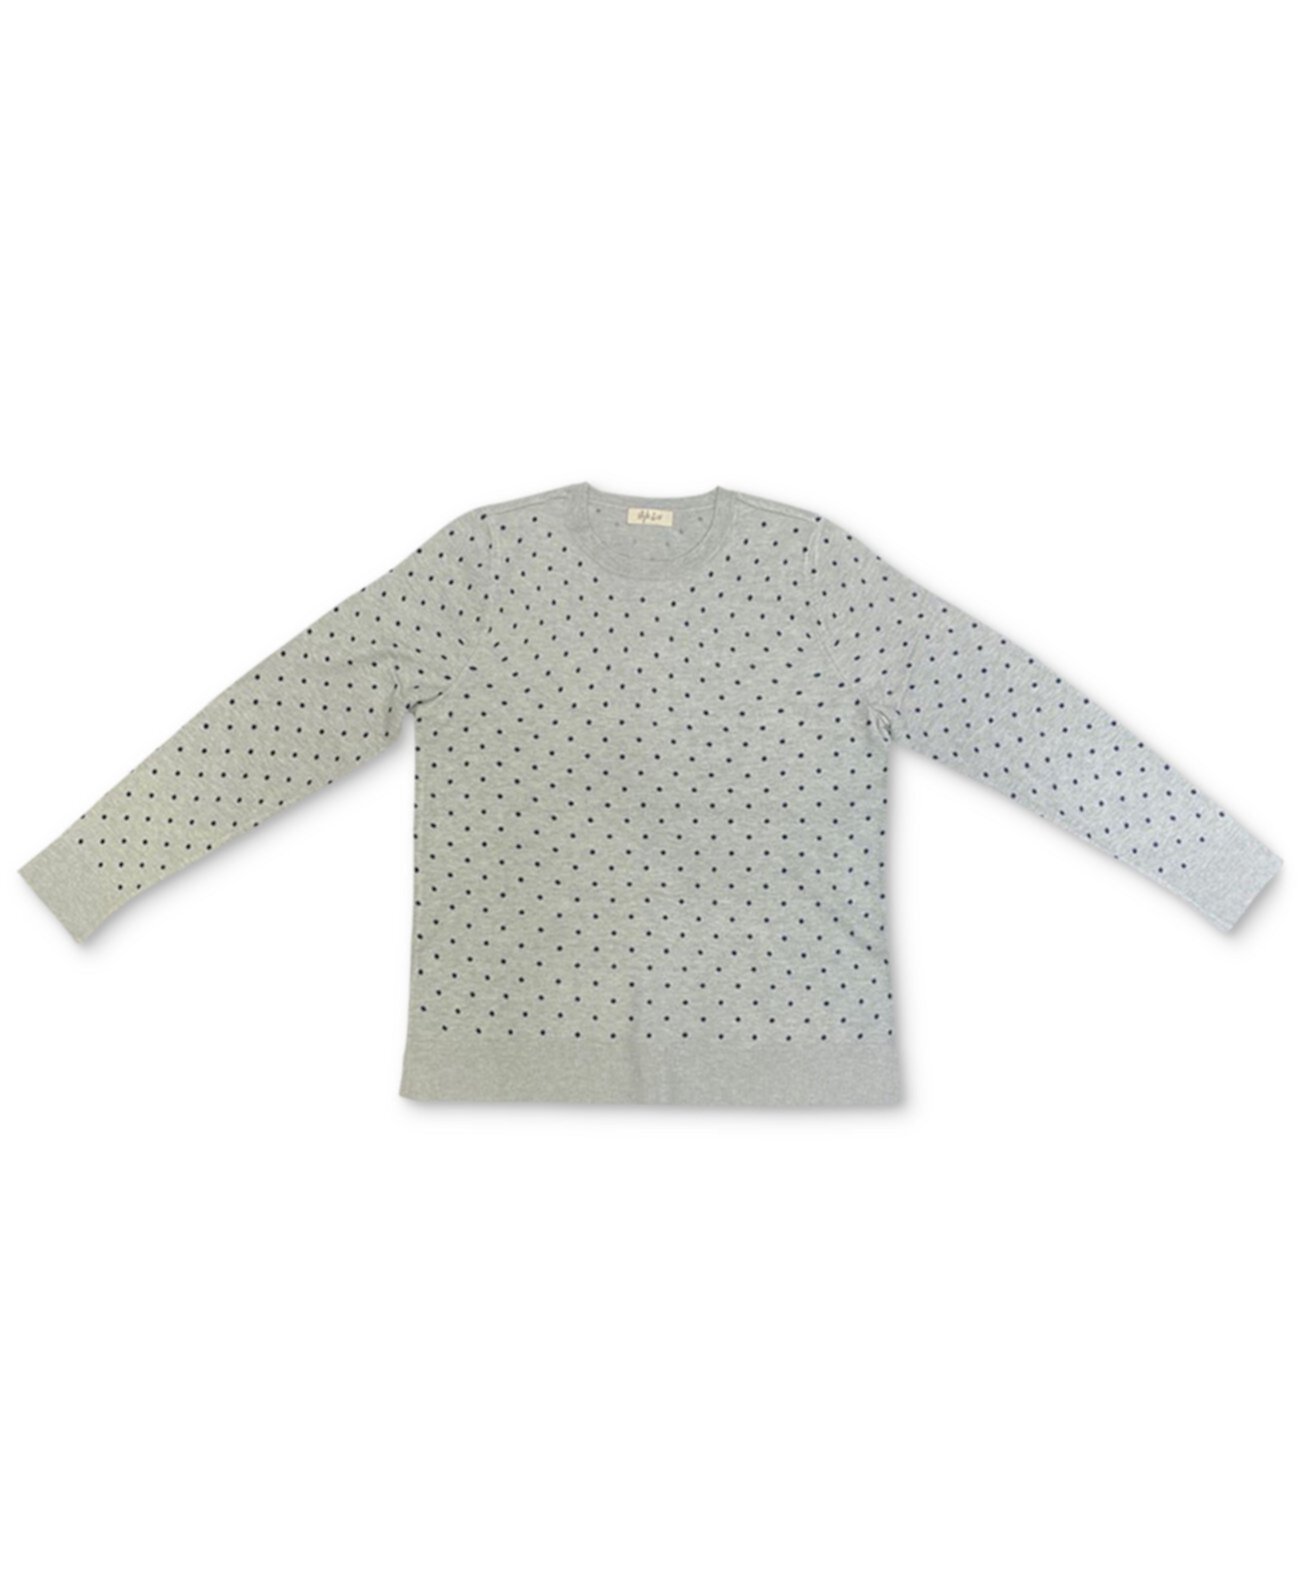 Пуловер с точечным принтом, созданный для Macy's Style & Co